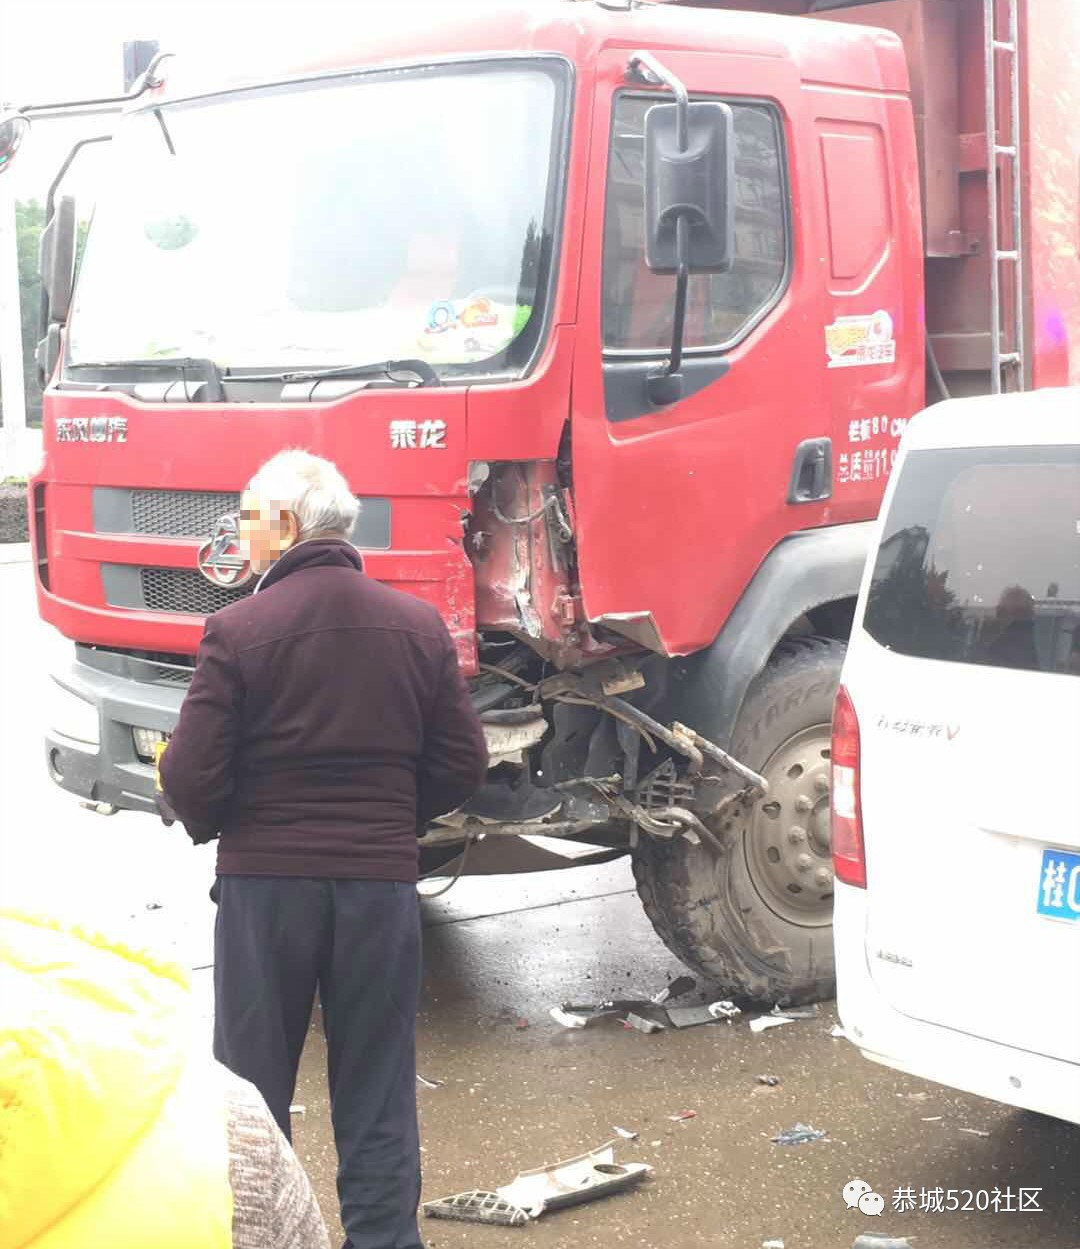 恭城新车站红绿灯处面包车与货车相撞，司机受伤42 / 作者:狗婆蛇 / 帖子ID:267248